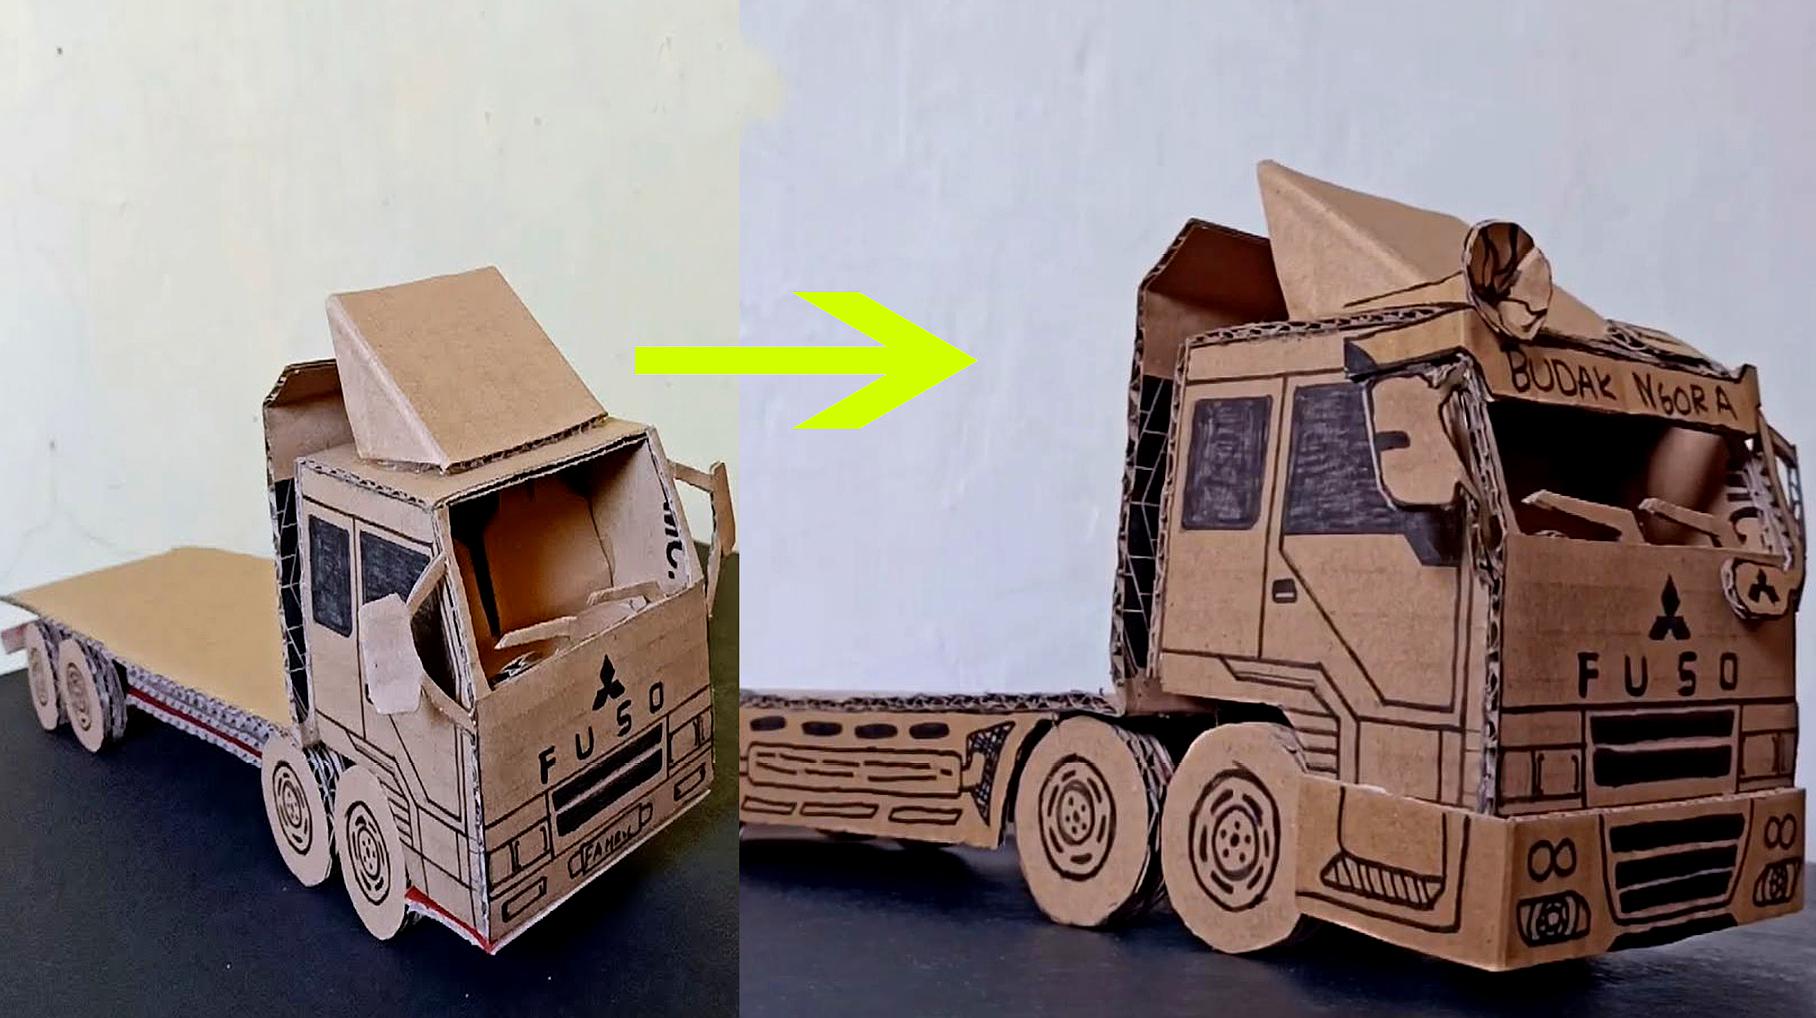 纸板玩具车教学,教你把做好的三菱运输车,手工改造成酷炫新外观